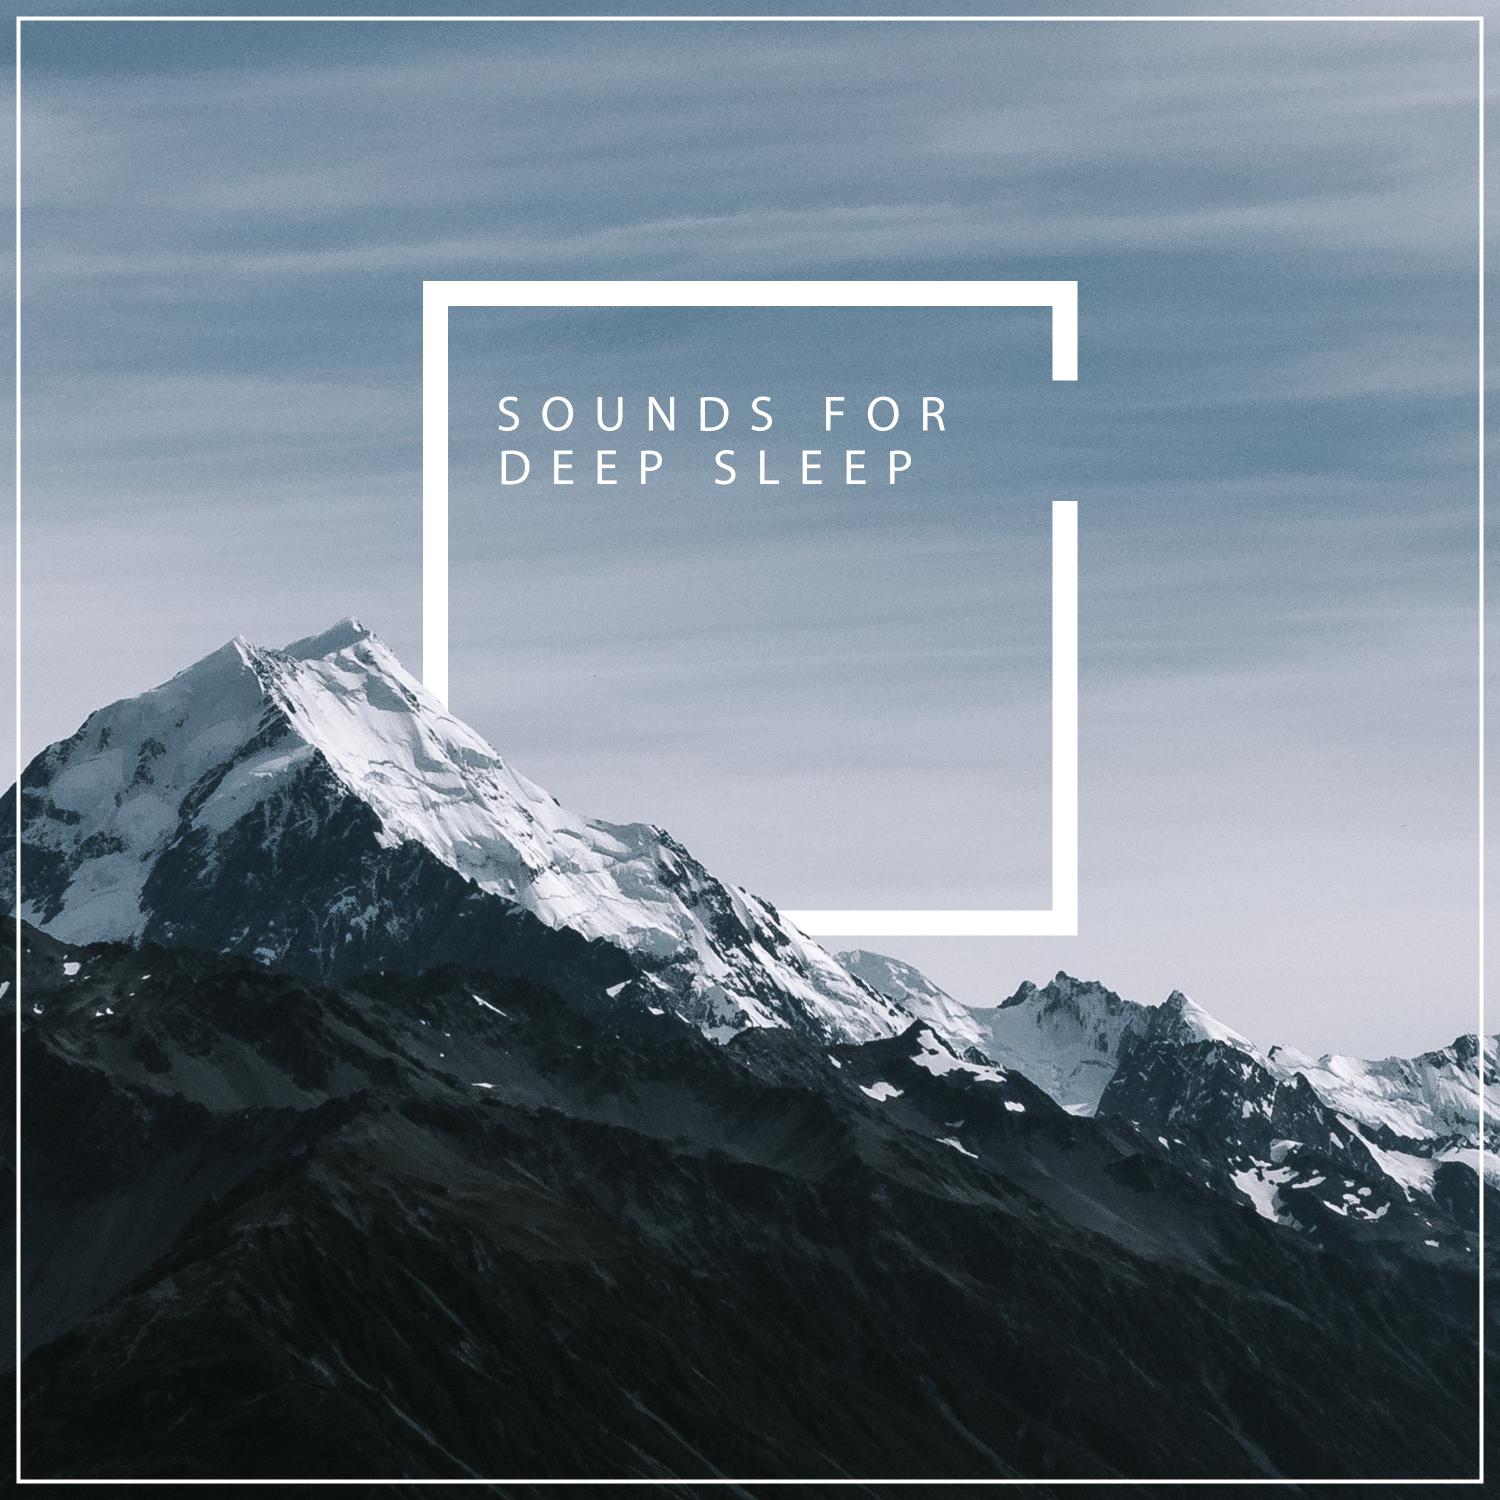 12 Sounds for Deep Sleep - Natural Rain